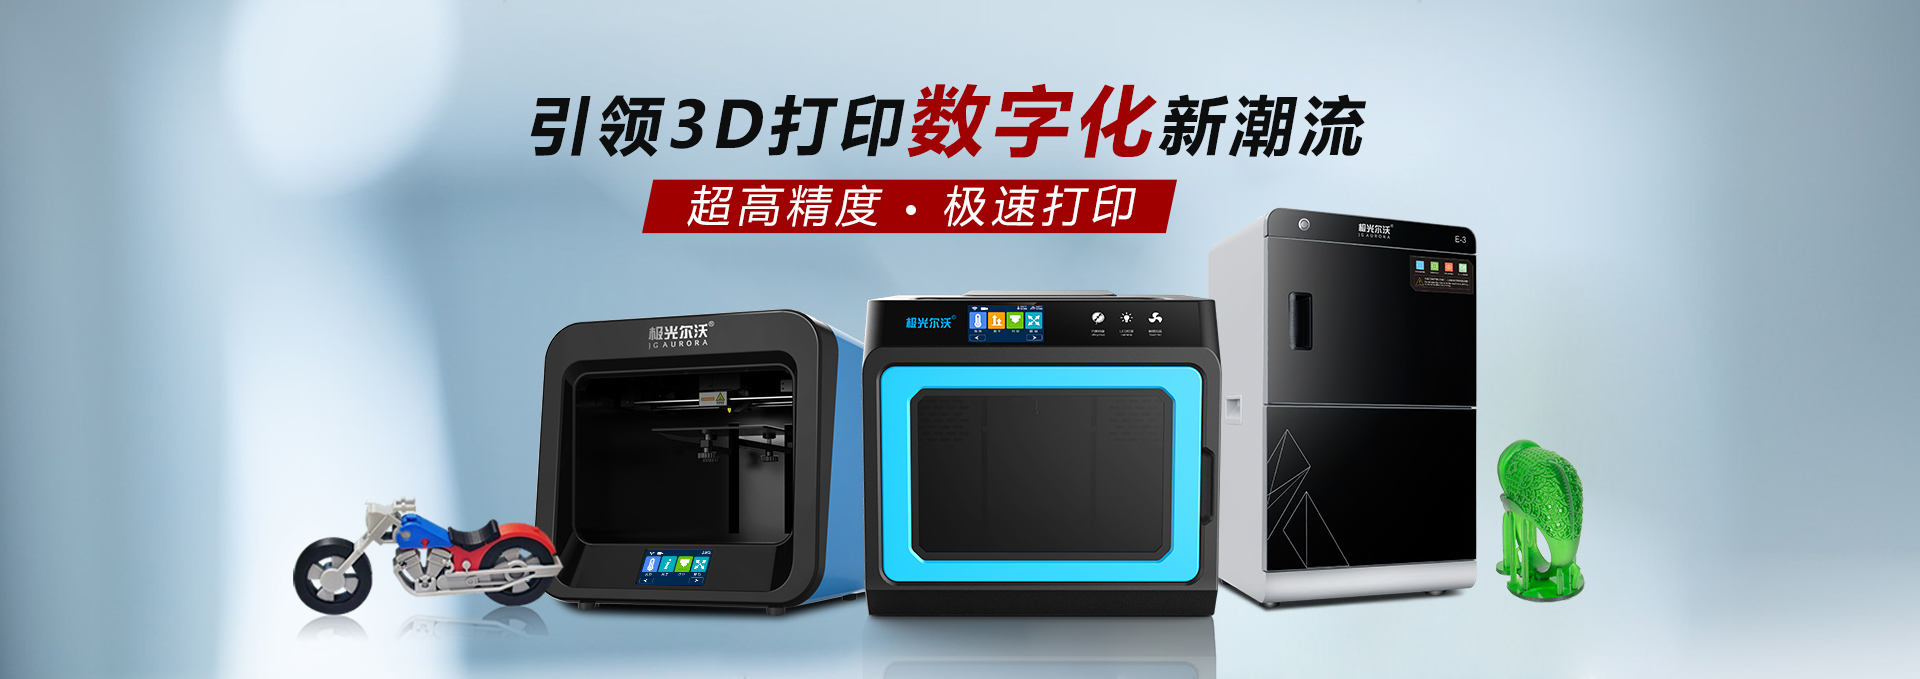 桌面级3D打印机和工业级3D打印机的区别